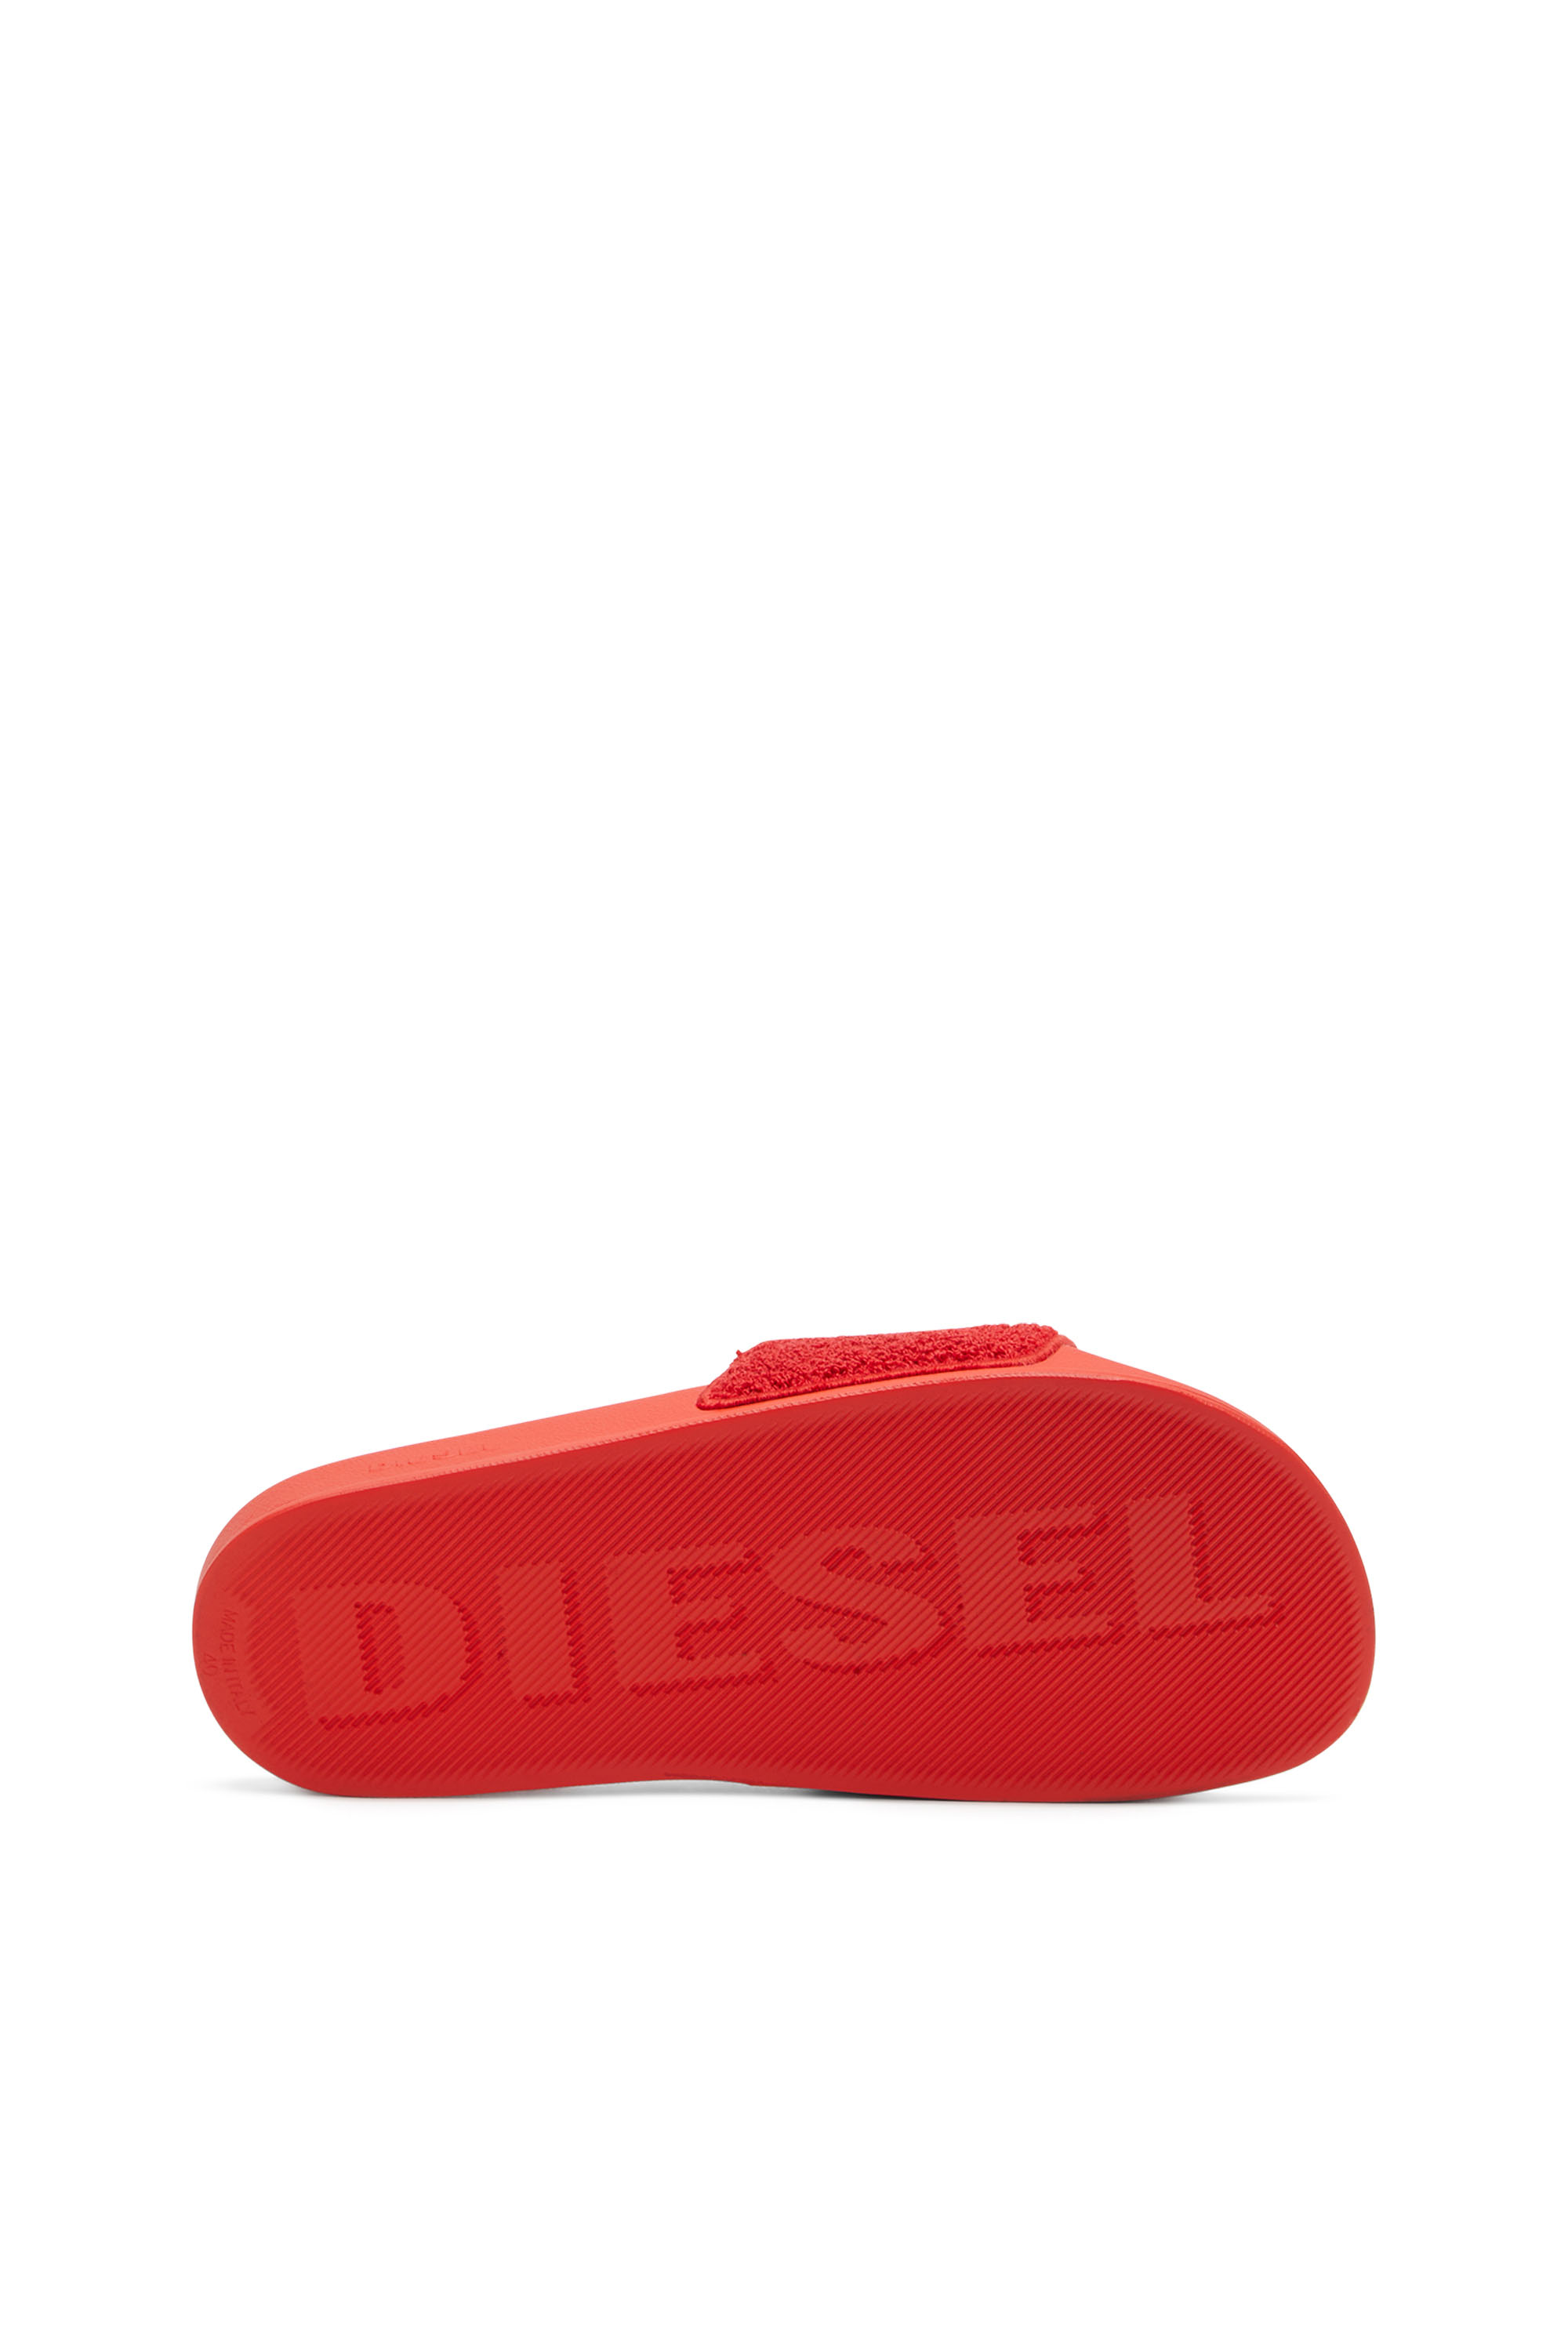 Diesel - SA-MAYEMI CC W, Rosso - Image 4